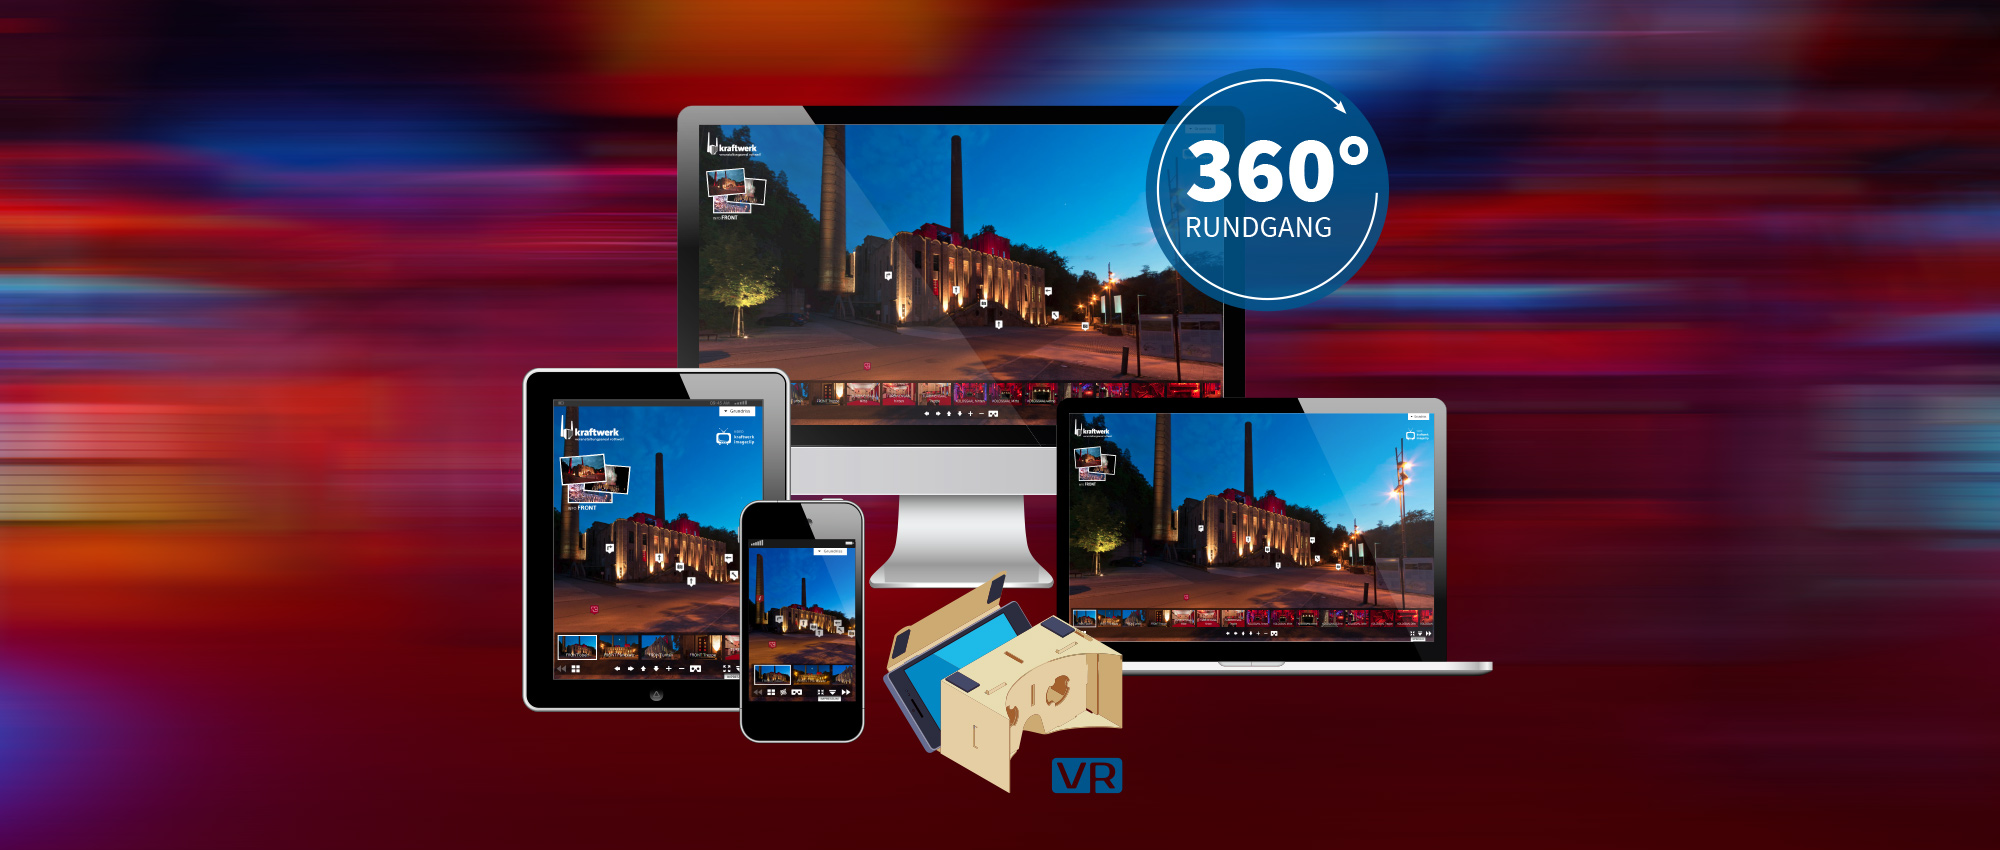 360 Grad Rundgang Agentur Fotostudio Virtueller Rundgang Werbeagentur